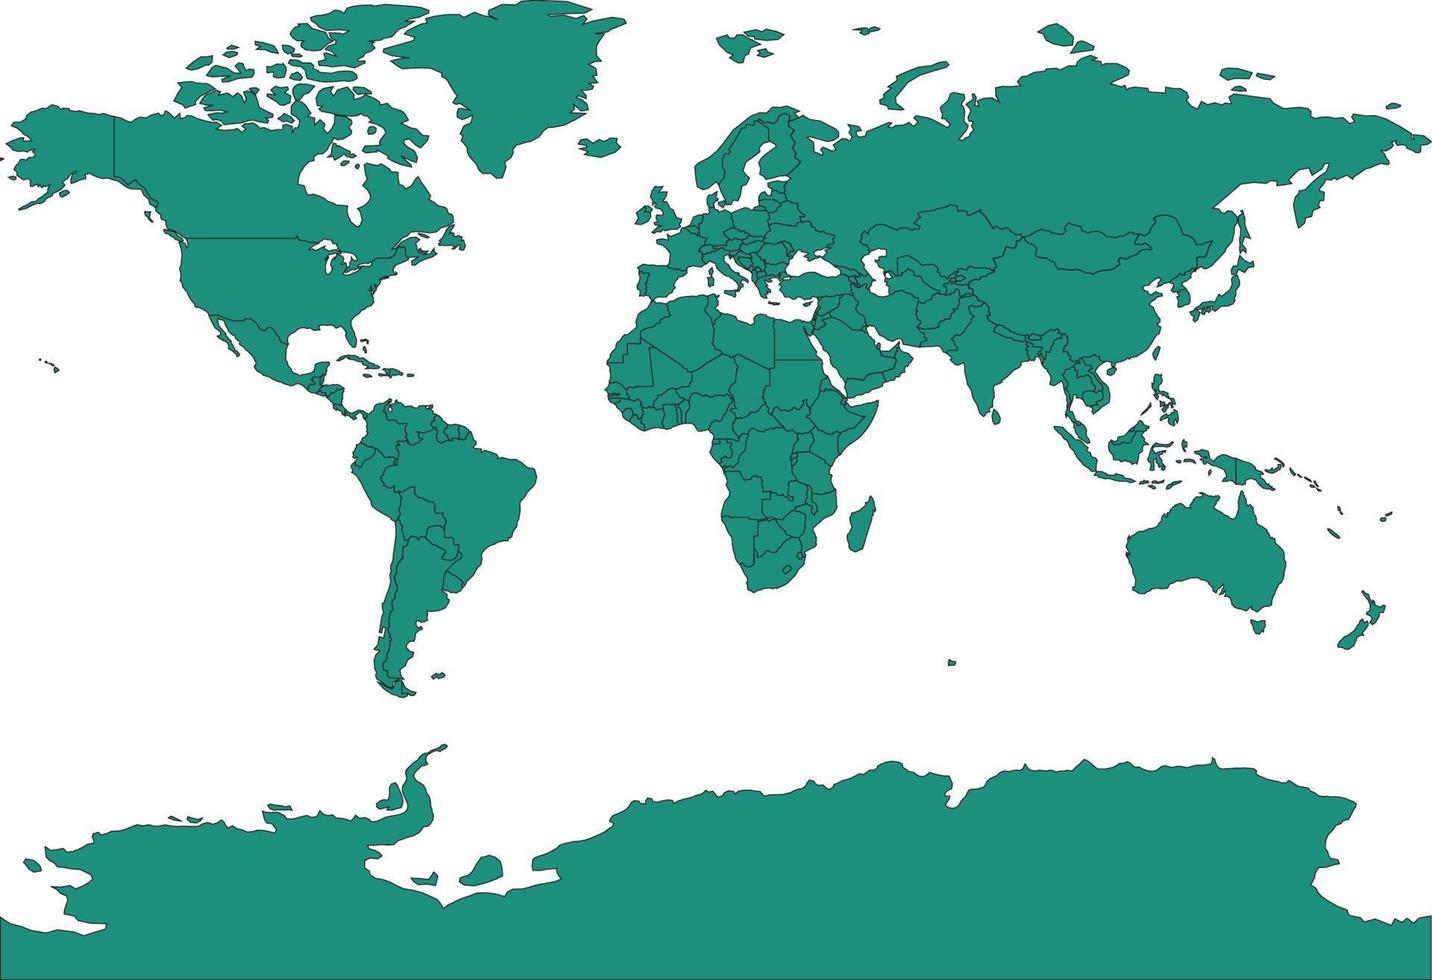 världskarta blågrön färg vektor